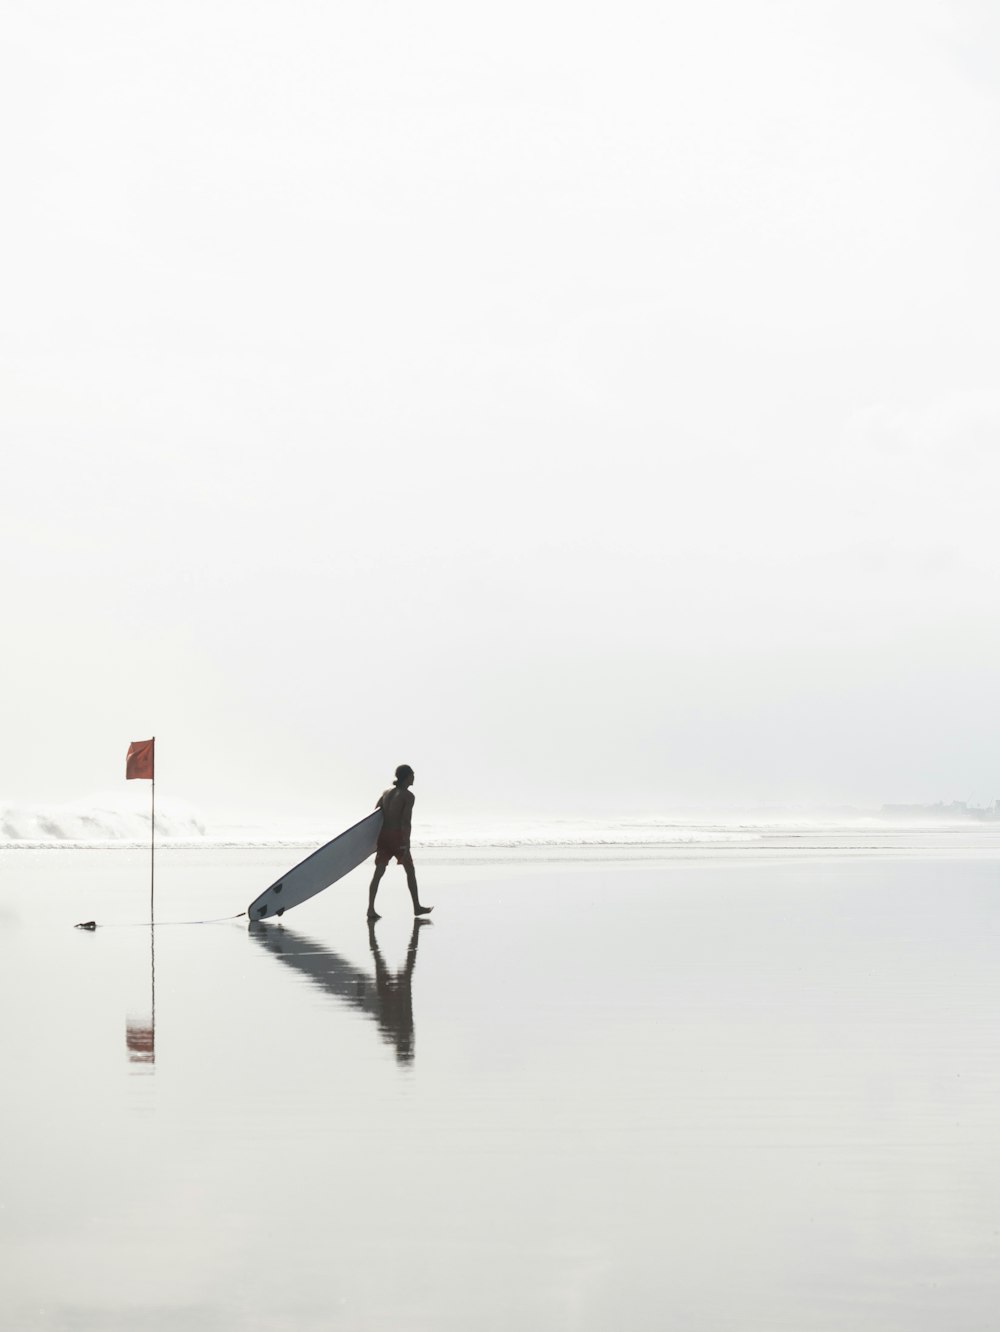 Mann geht zu Fuß, während er tagsüber ein Surfbrett am Strand in der Nähe von Flag zieht